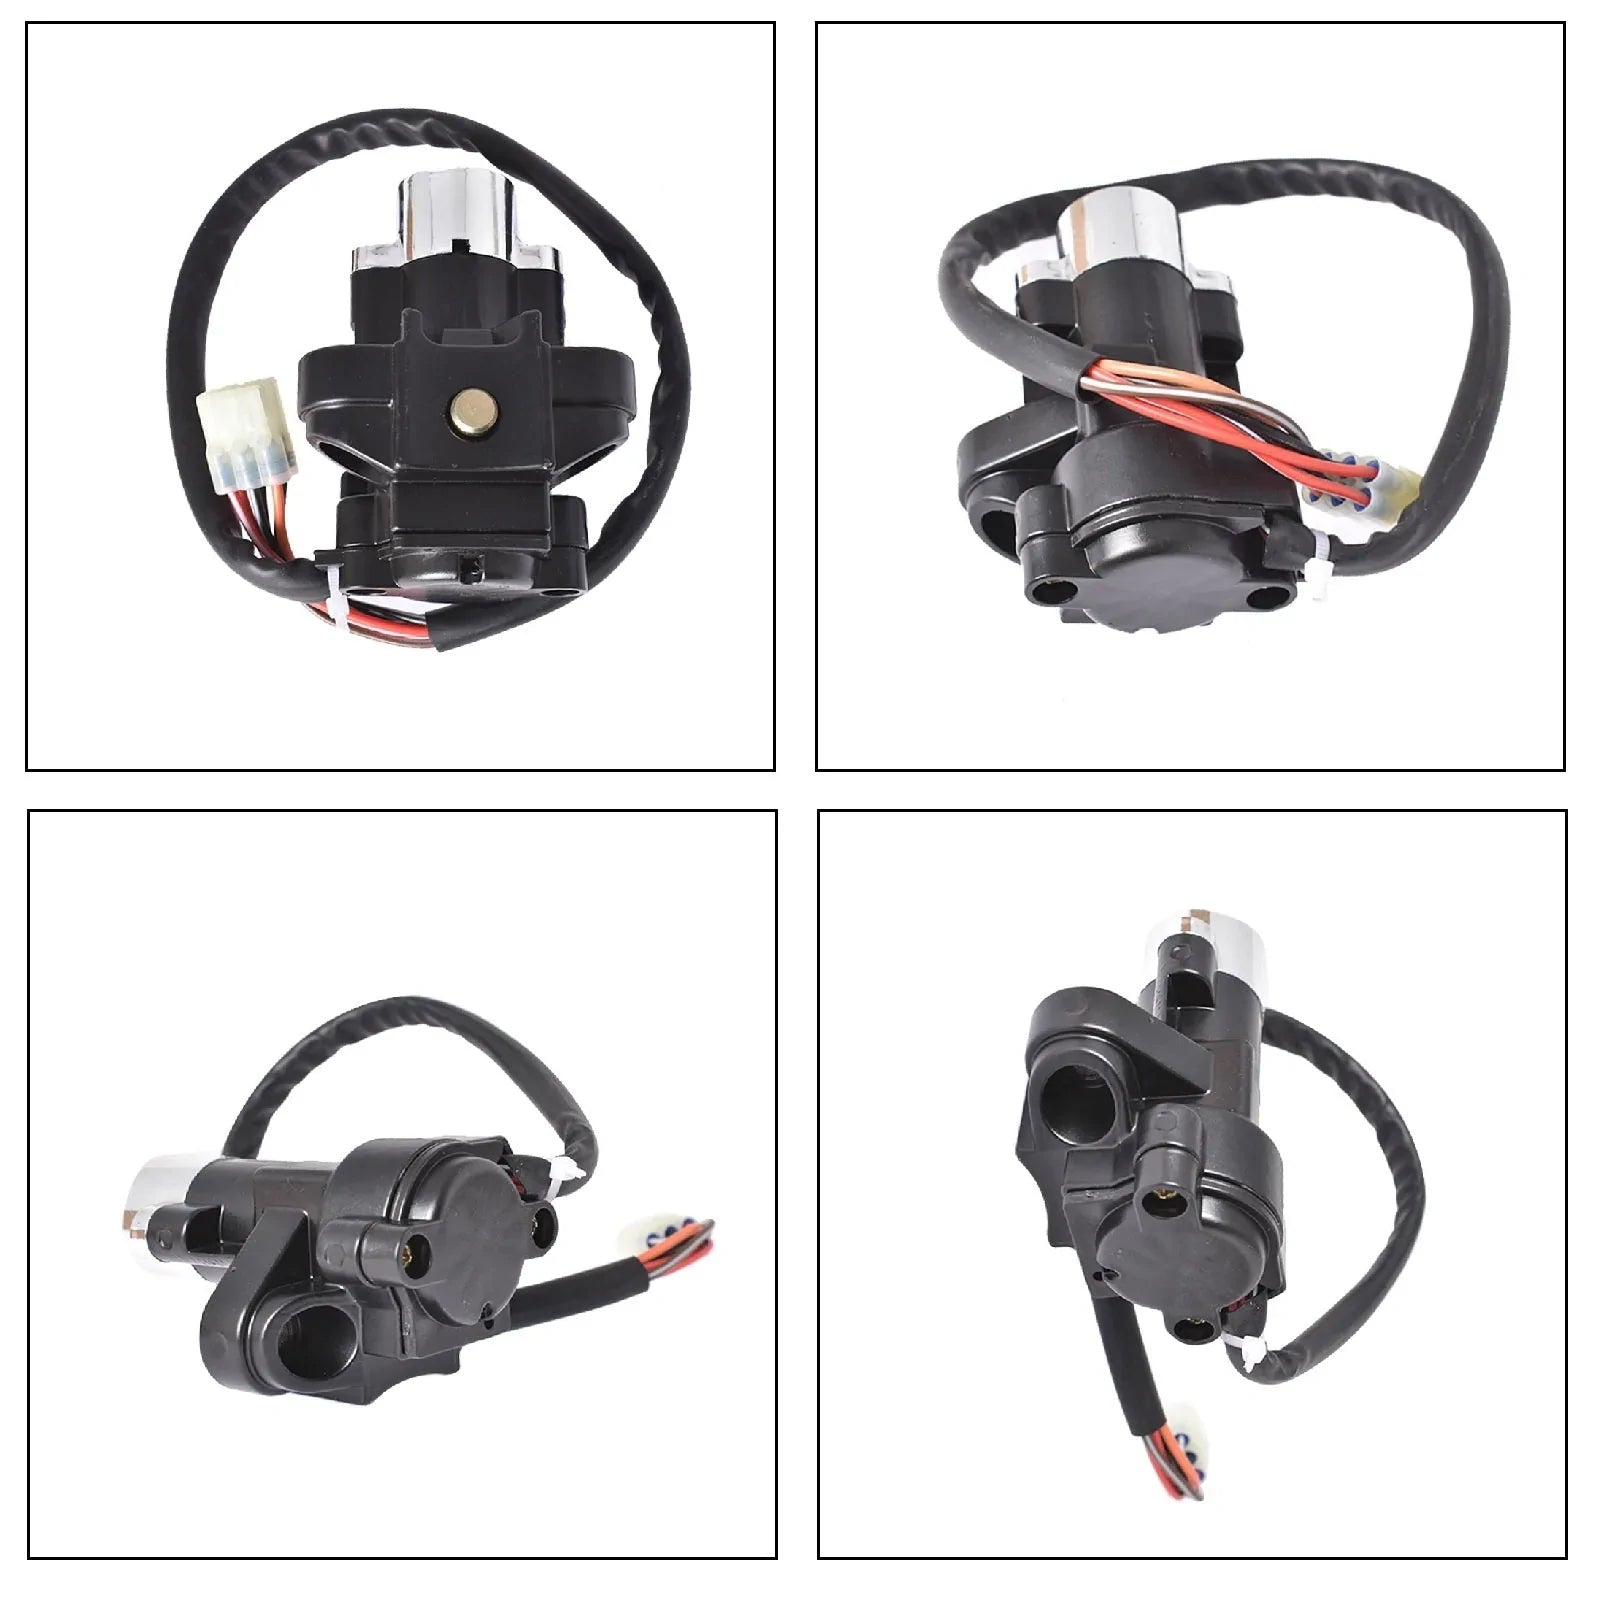 Ignition Switch W/Key Fit for Suzuki GSXR600 GSXR750 GSX650 GSX1250 GSF650 GSF1200 GSF1250 SFV650 SV650 DL650 600 650 750 1250 LAB WORK MOTO